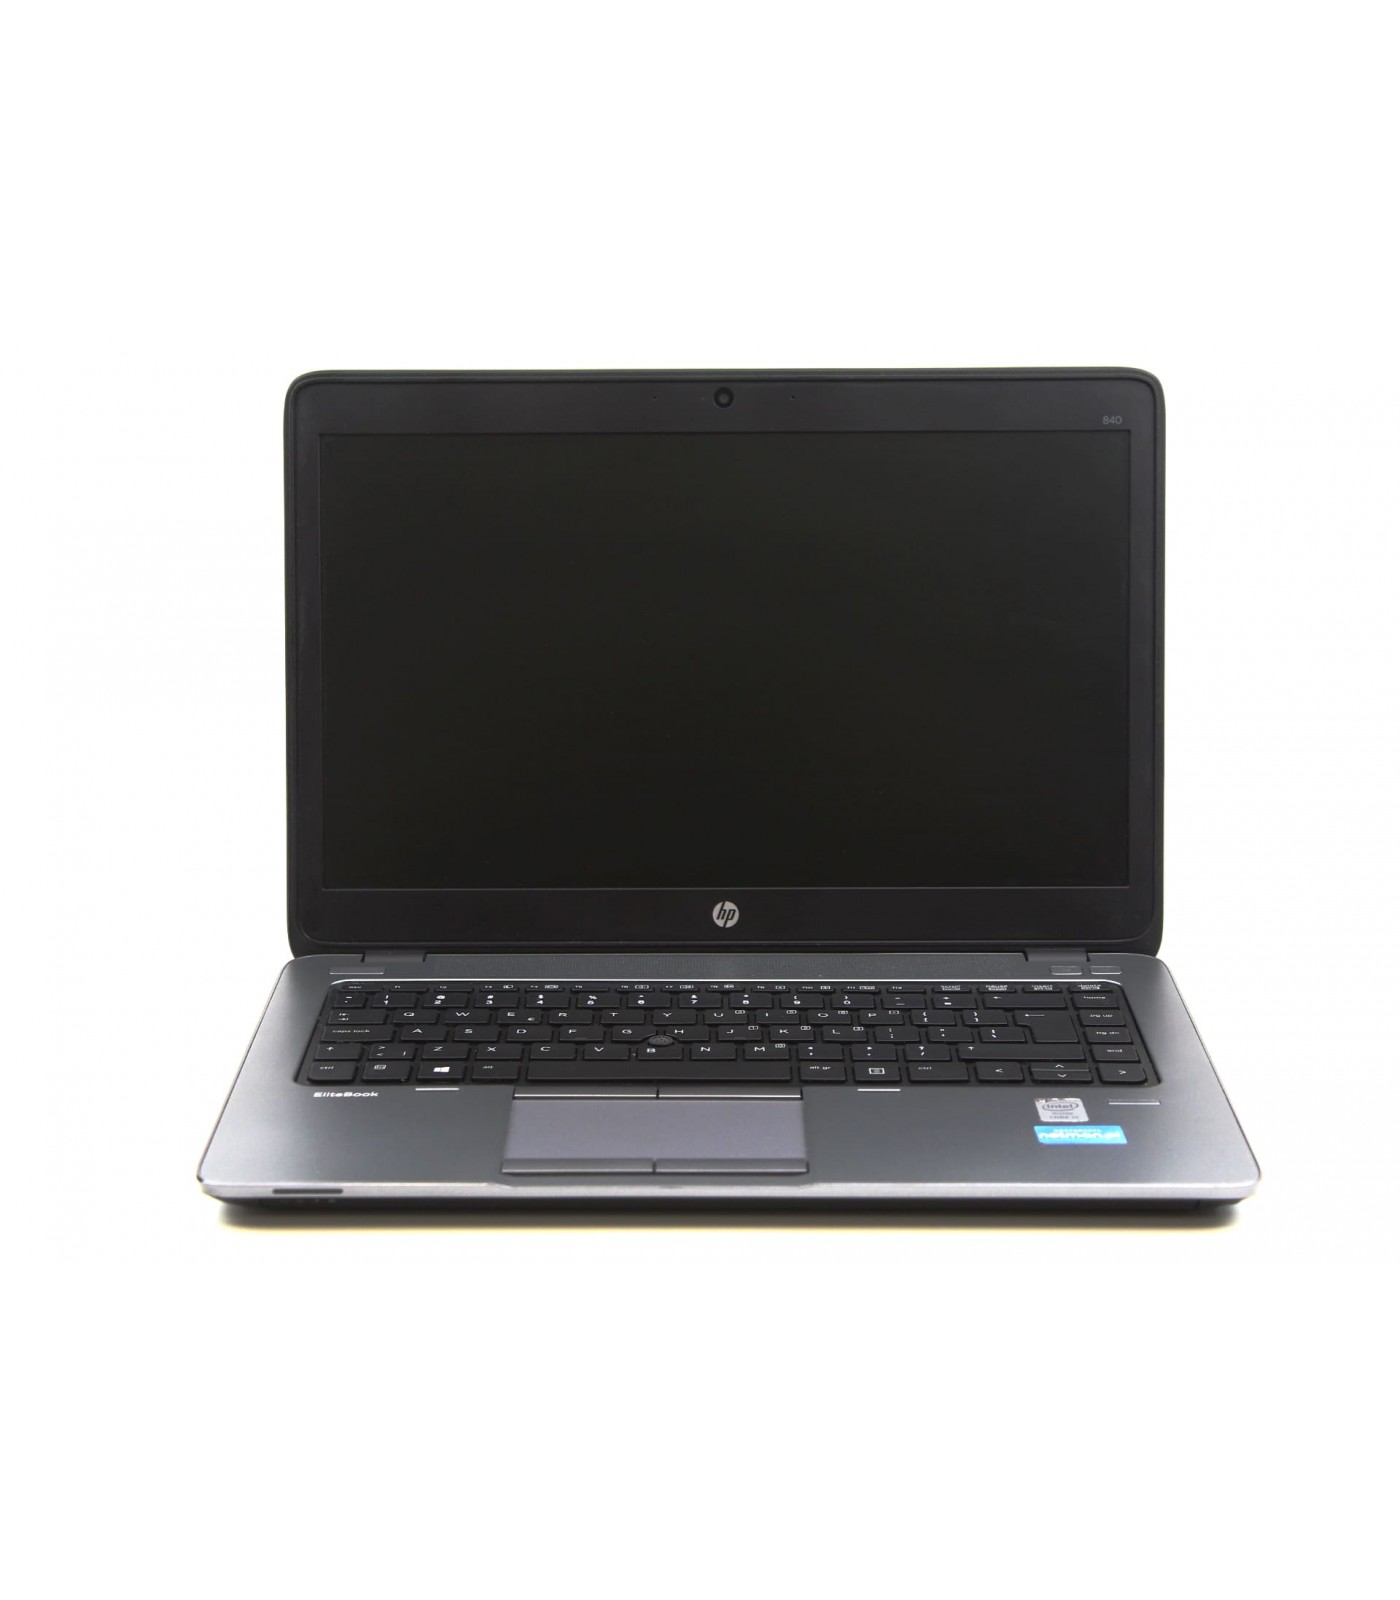 Poleasingowy laptop HP EliteBook 840 G1 z Intel Core i5-4210U w Klasie A-